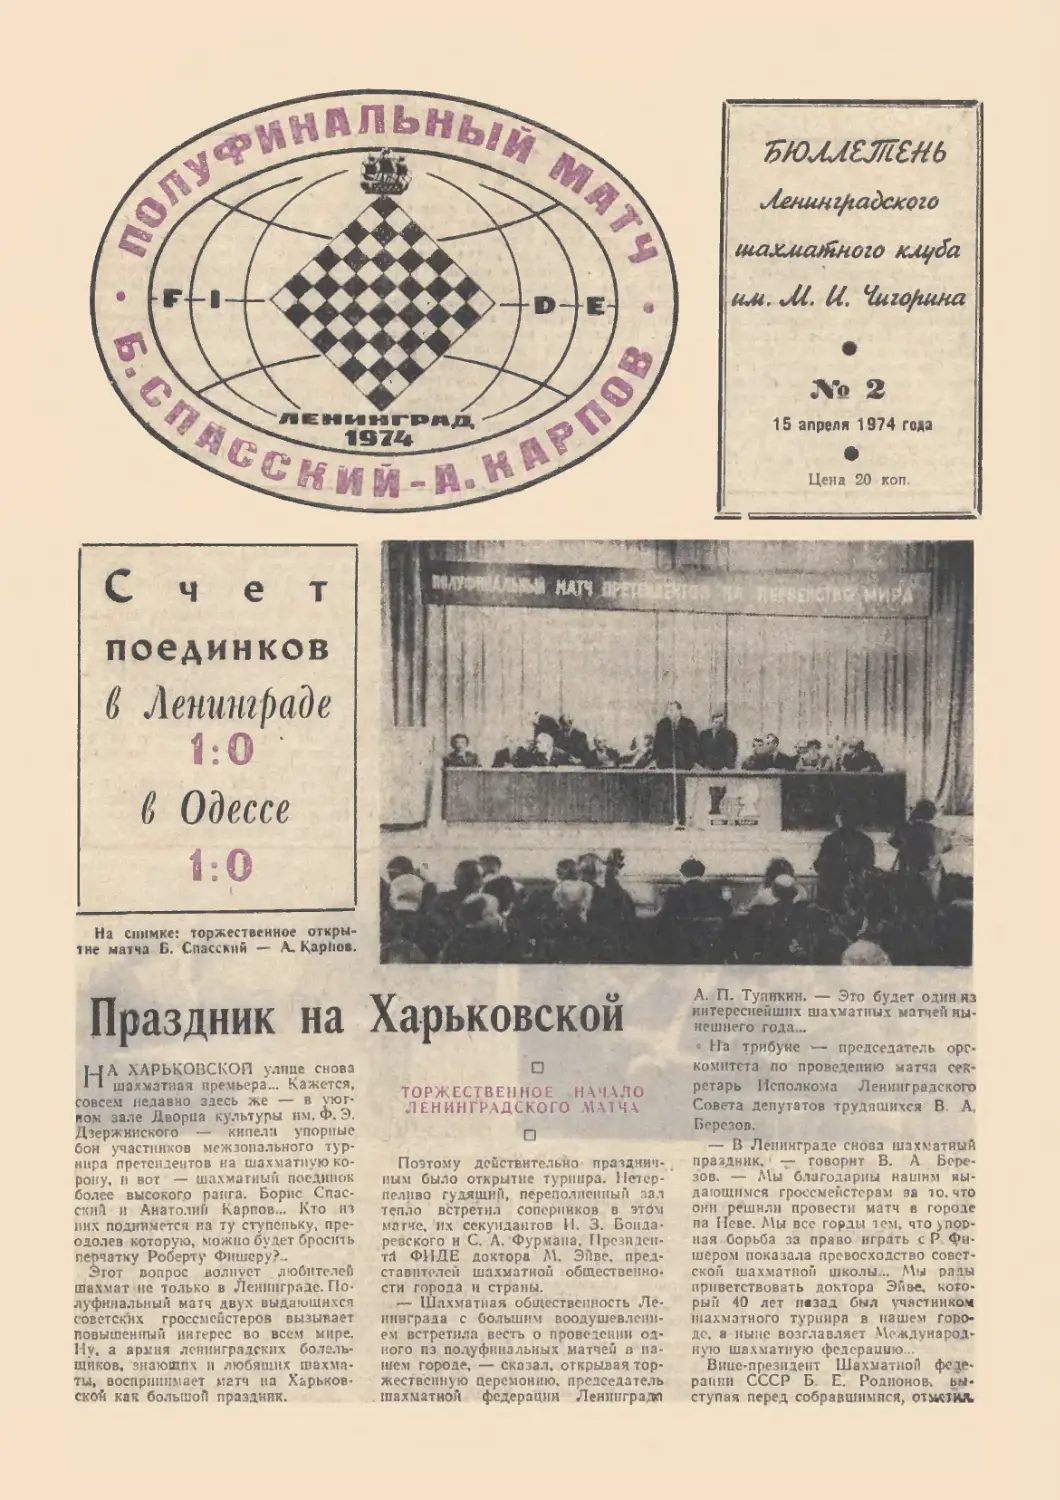 № 2 - 15 апреля 1974 г.
Г.Томашевский - Праздник на Харьковской